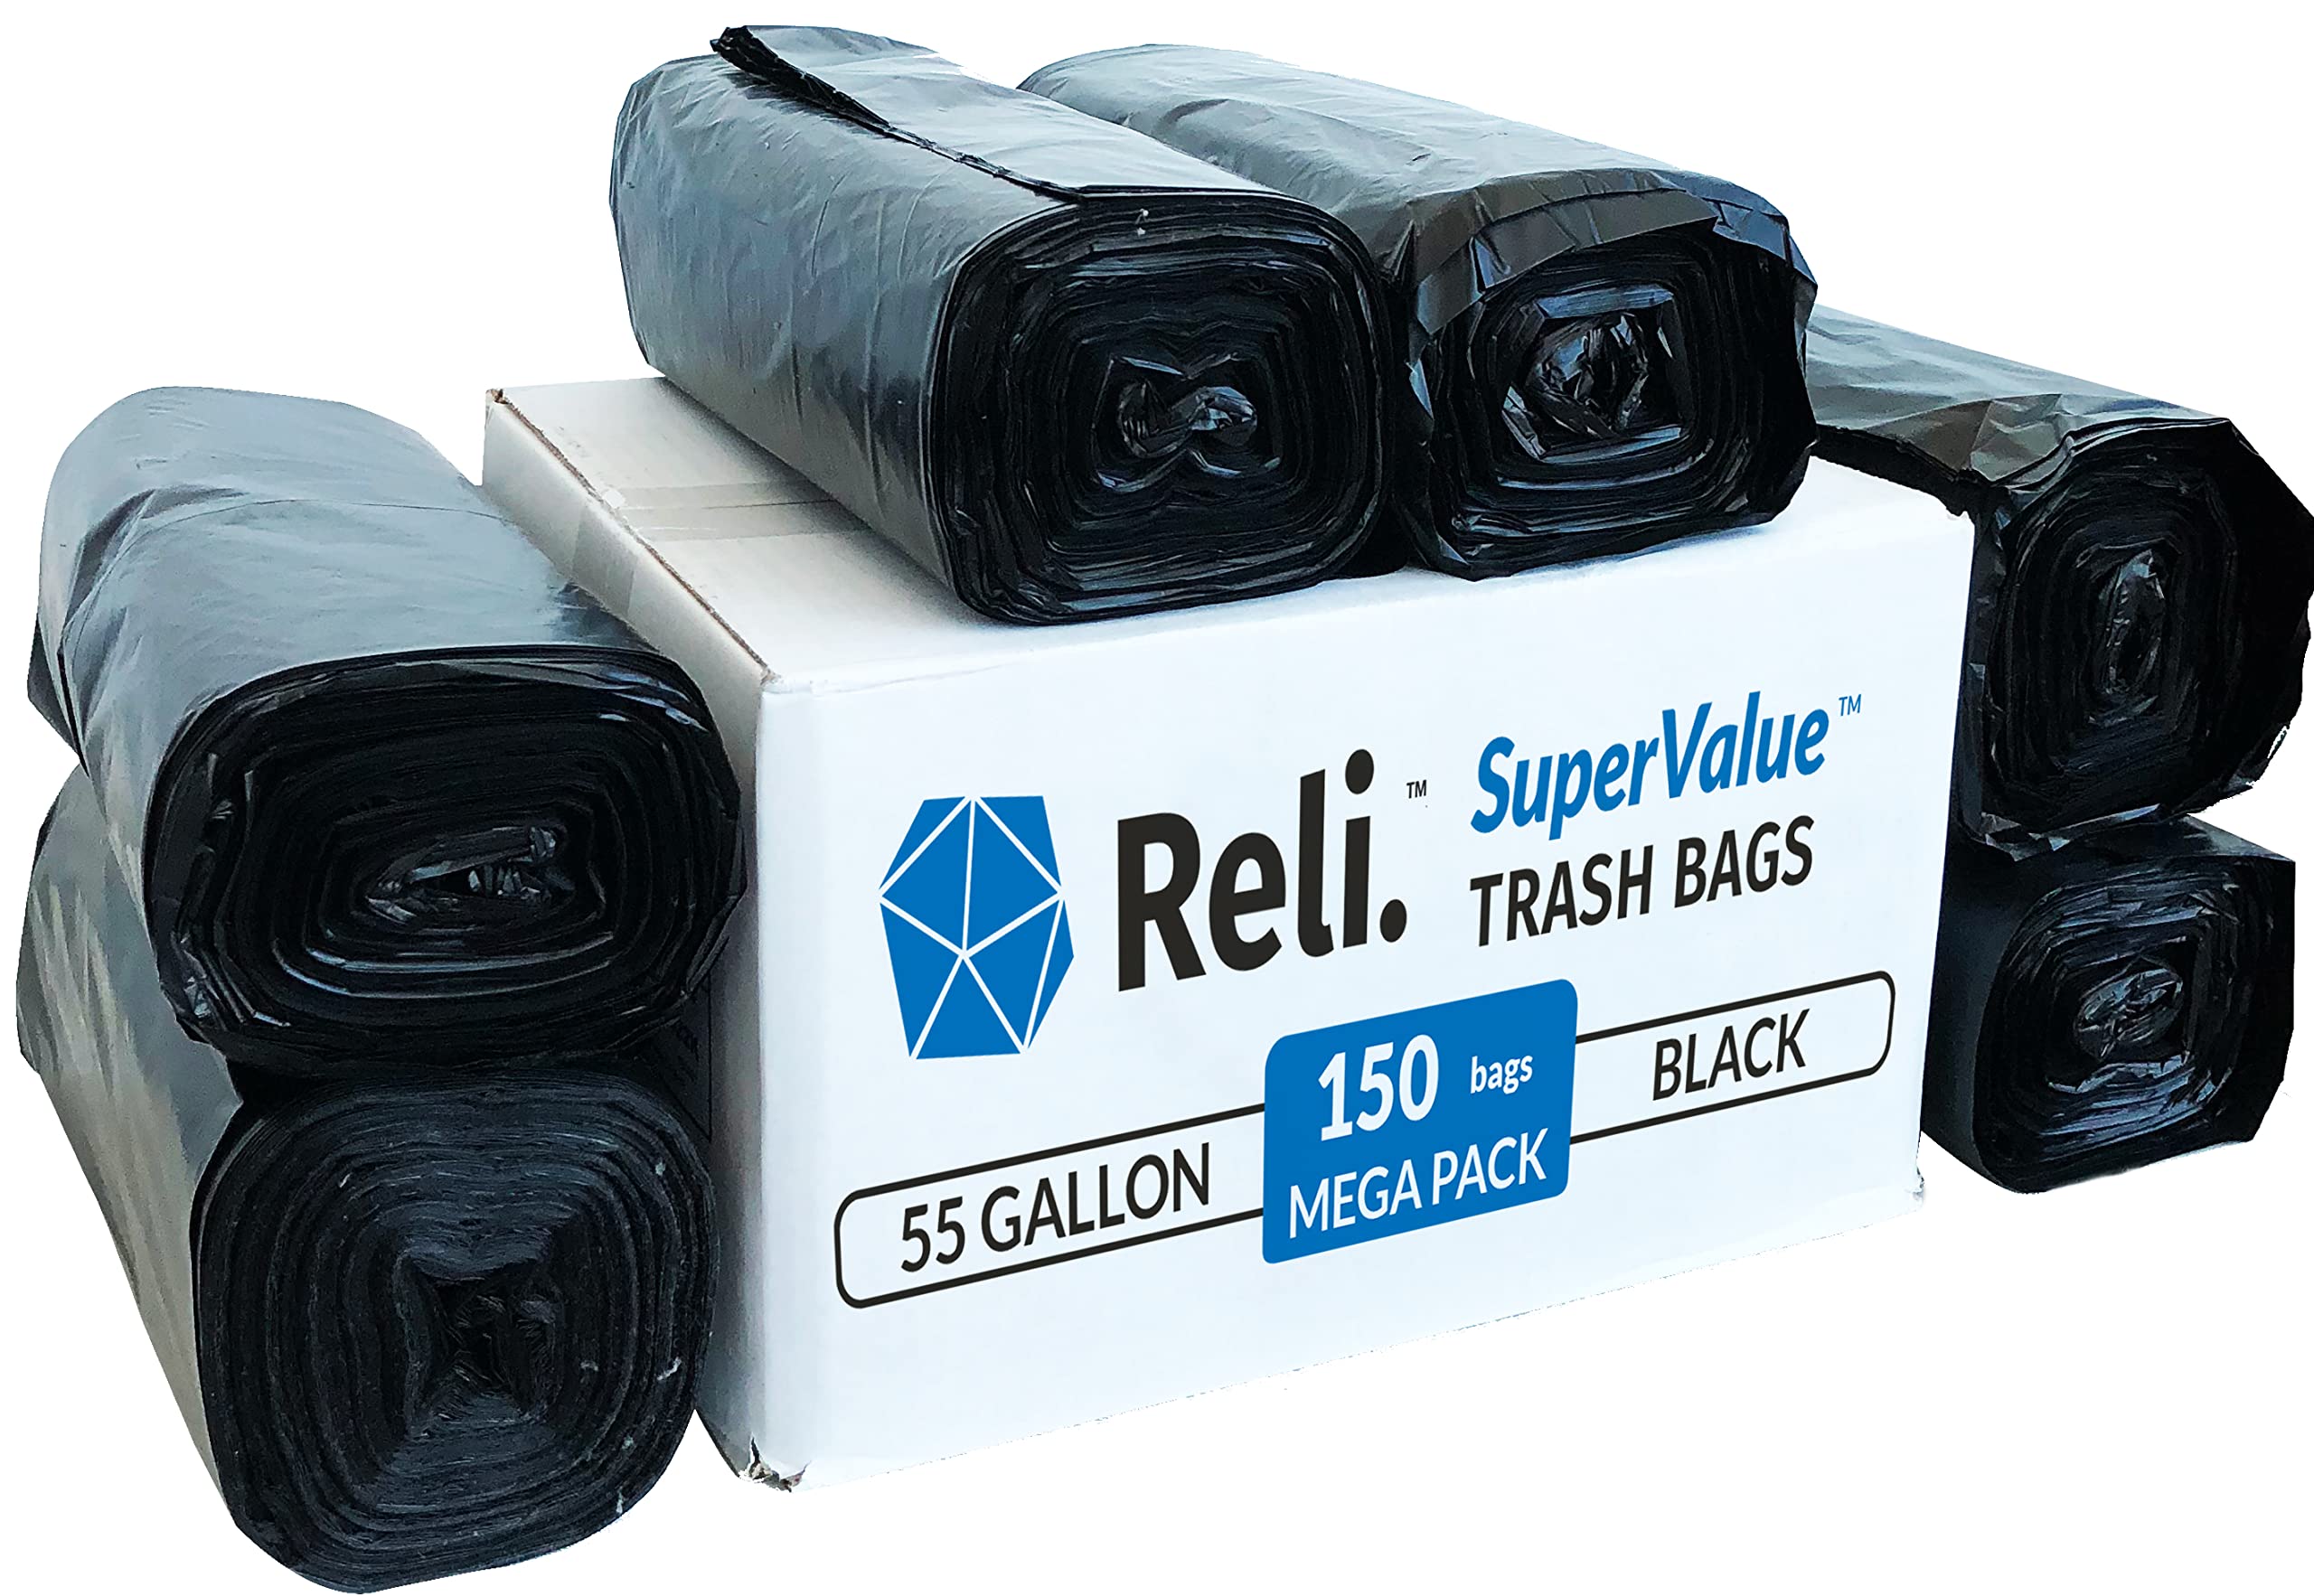 Reli. Prograde Contractor Trash Bags 55 Gallon (20 Bags w/Ties) Black 55 Gallon Trash Bags Heavy Duty, Garbage